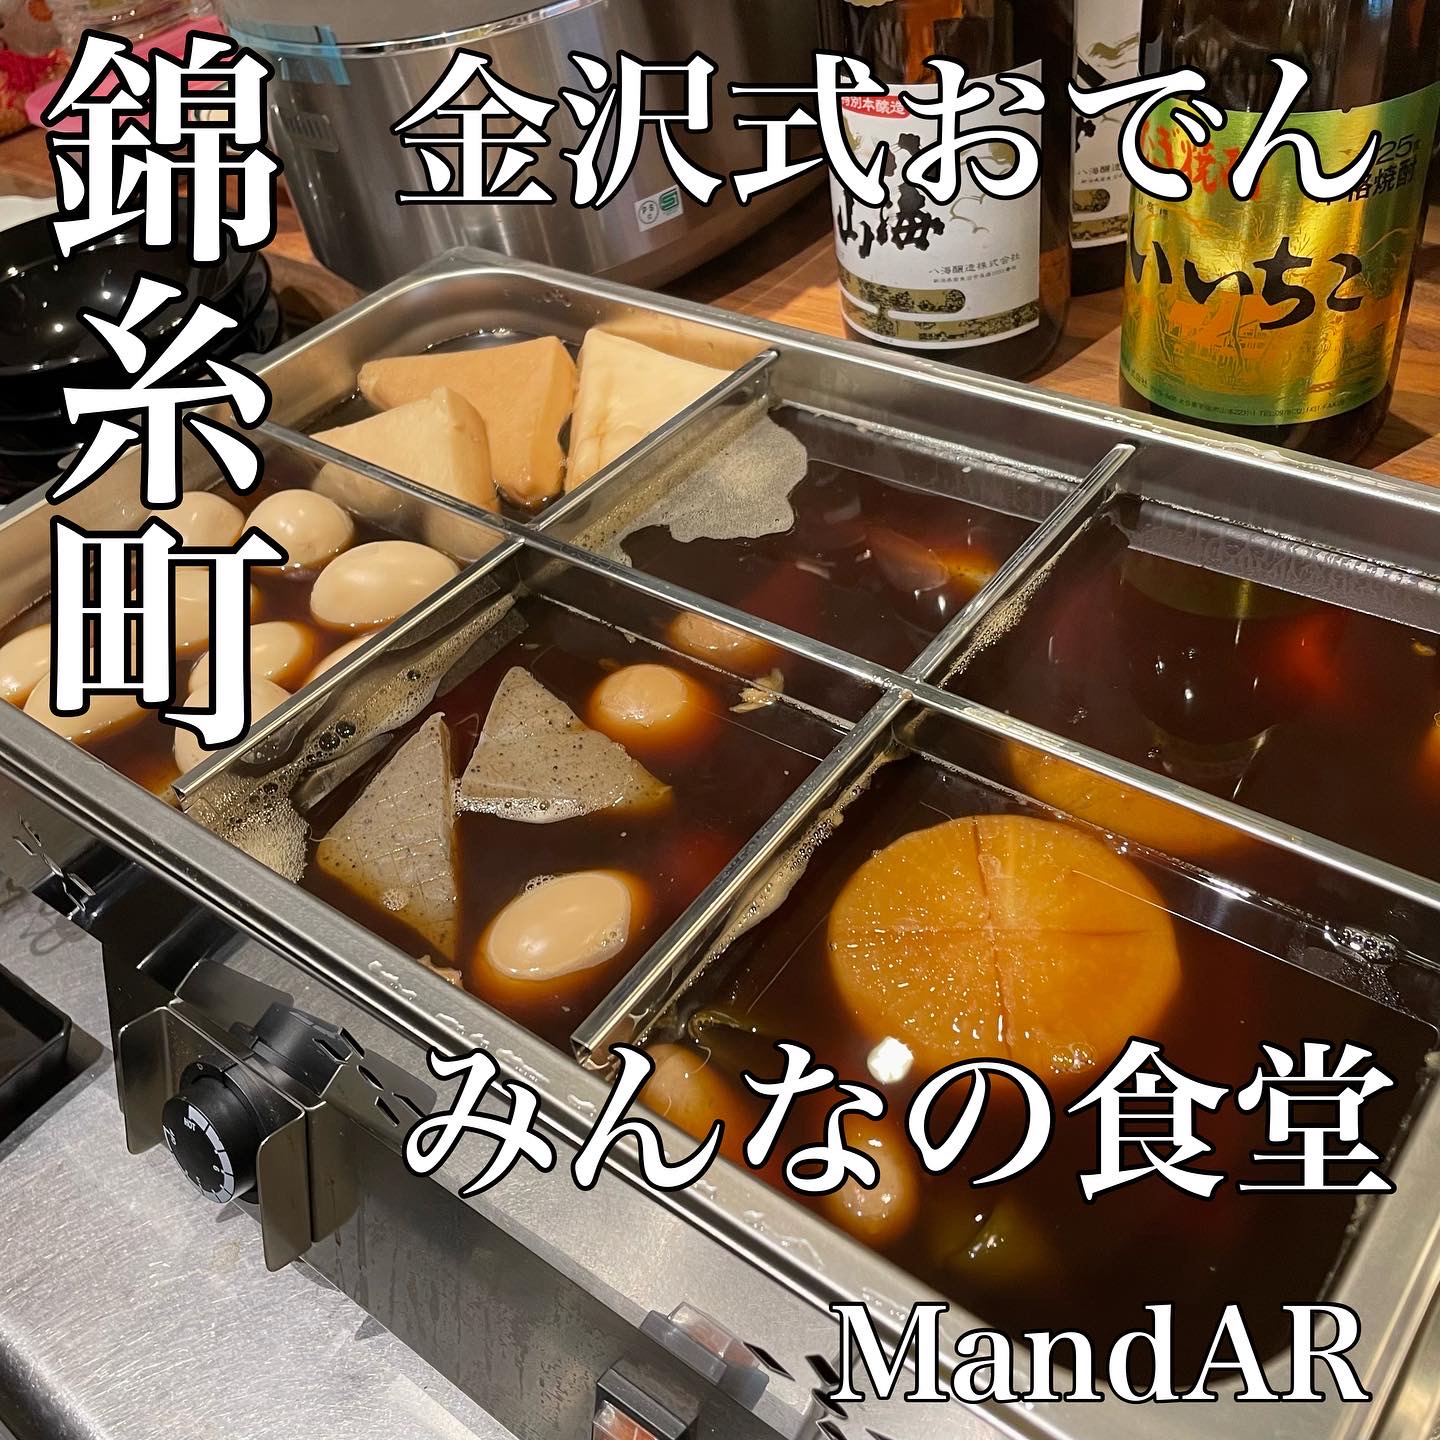 味噌だれでいただく金沢おでんの店 みんなの食堂m Ar が錦糸町にオープン Newscast